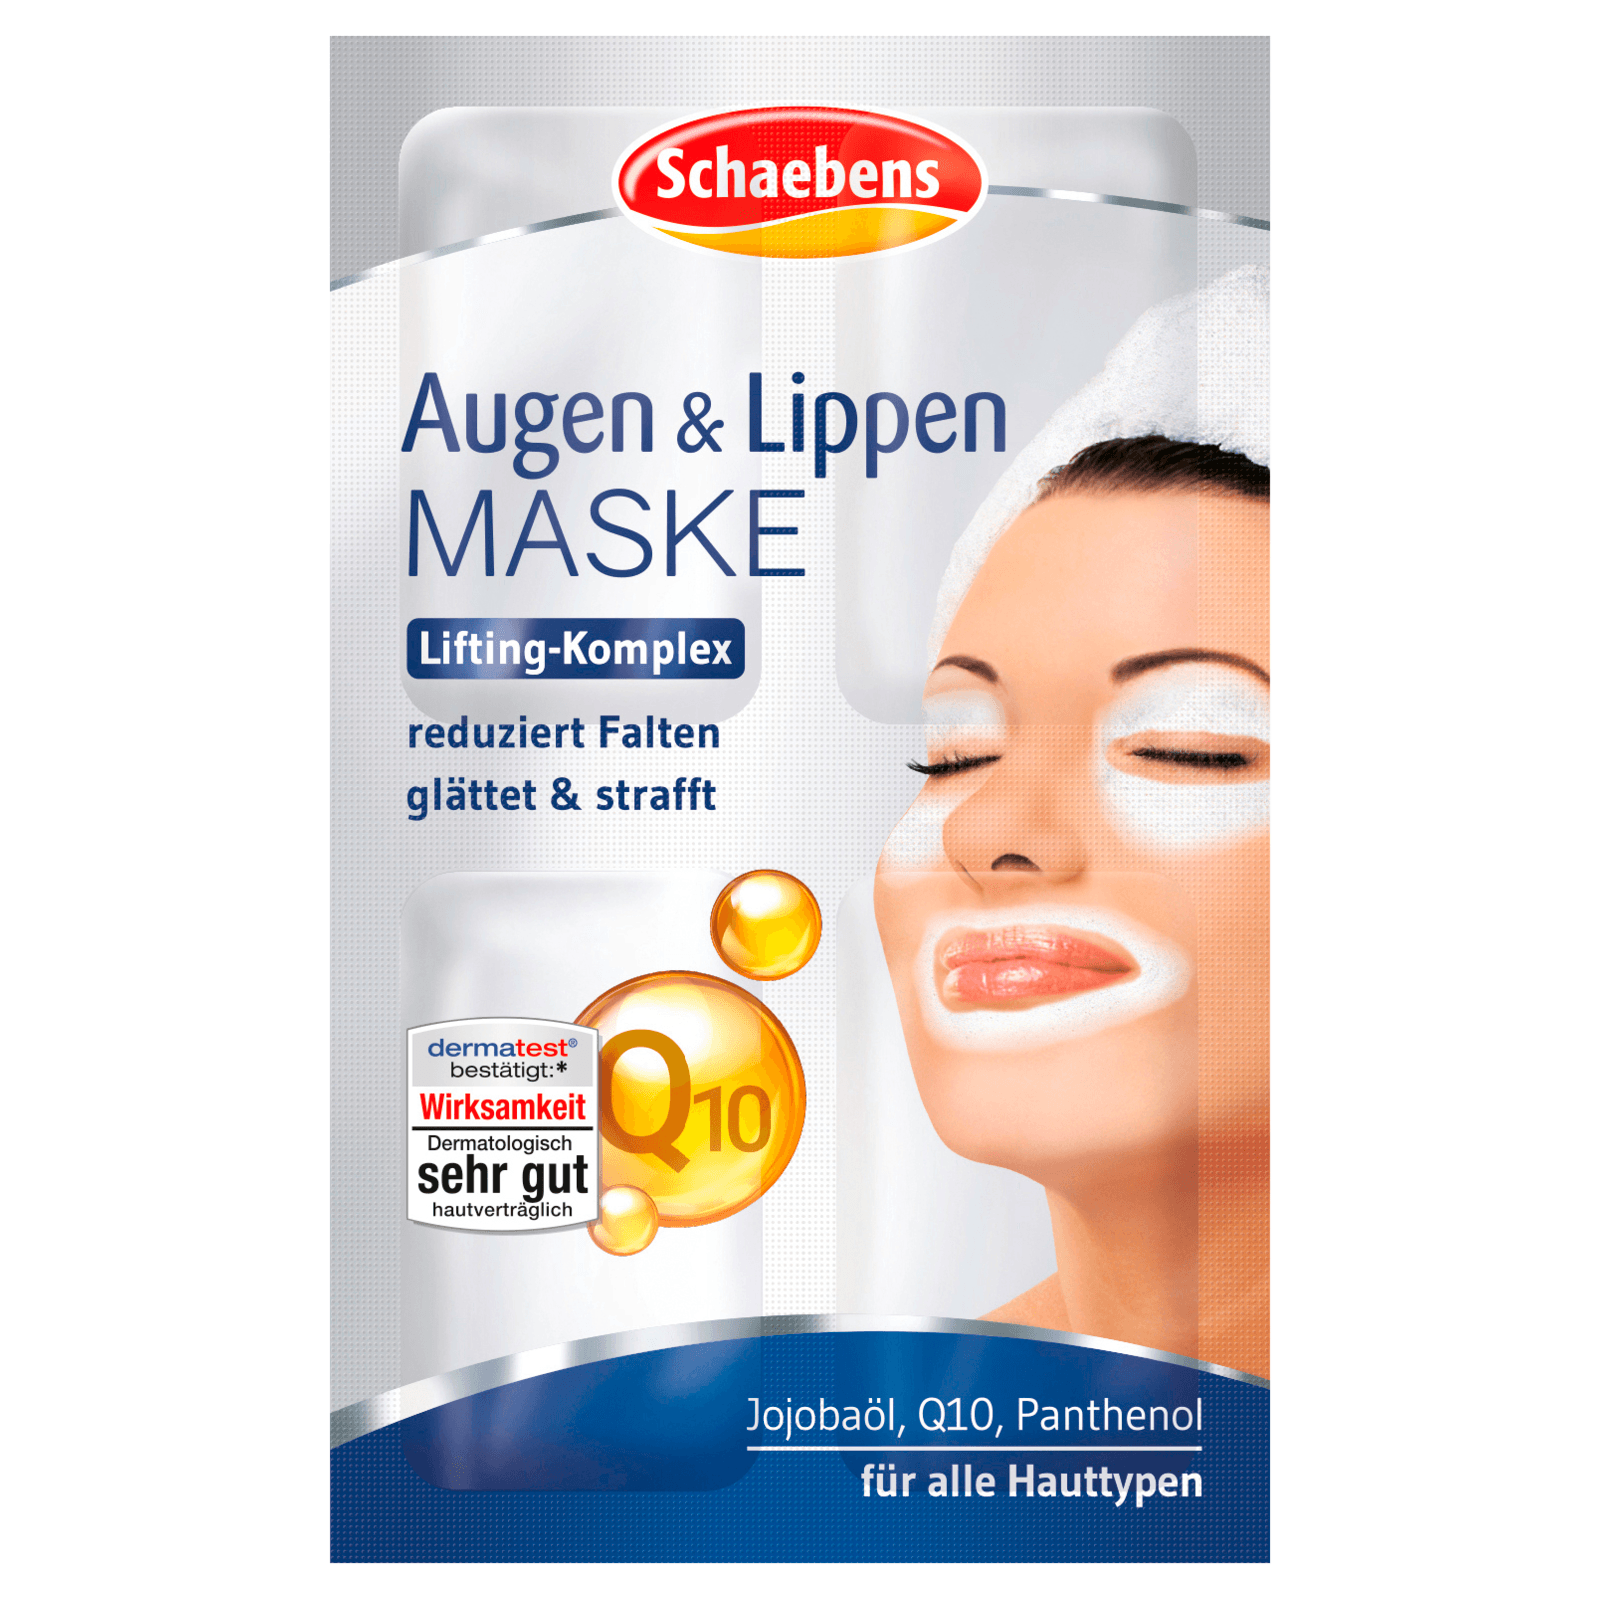 Schaebens Augen Lippen Maske 4x1 5ml Bei Rewe Online Bestellen